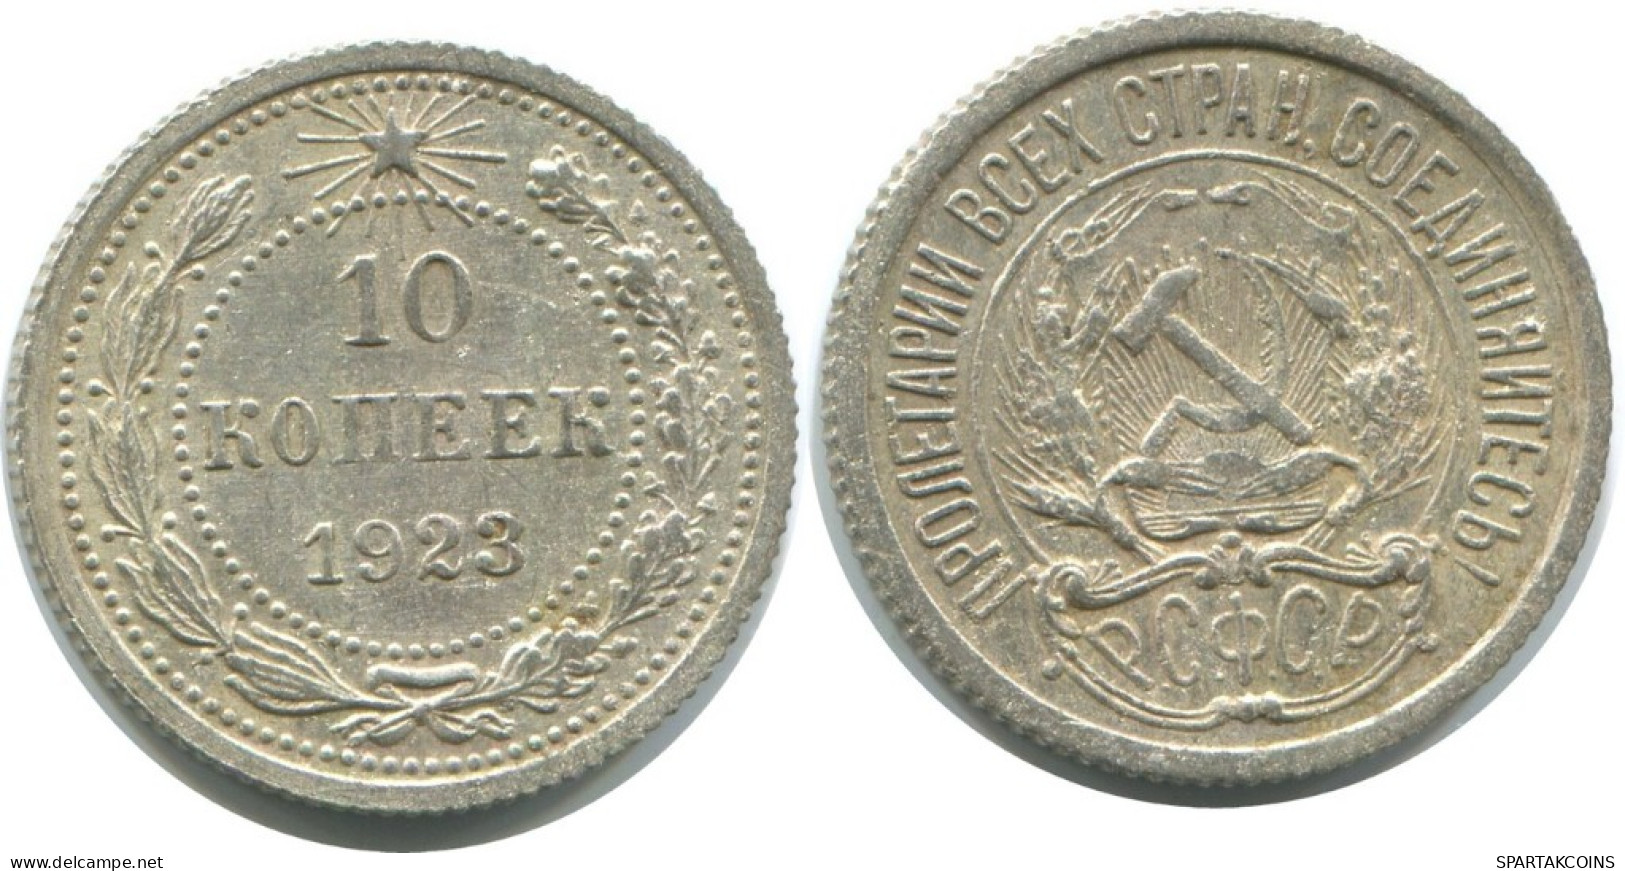 10 KOPEKS 1923 RUSSLAND RUSSIA RSFSR SILBER Münze HIGH GRADE #AE923.4.D.A - Russie